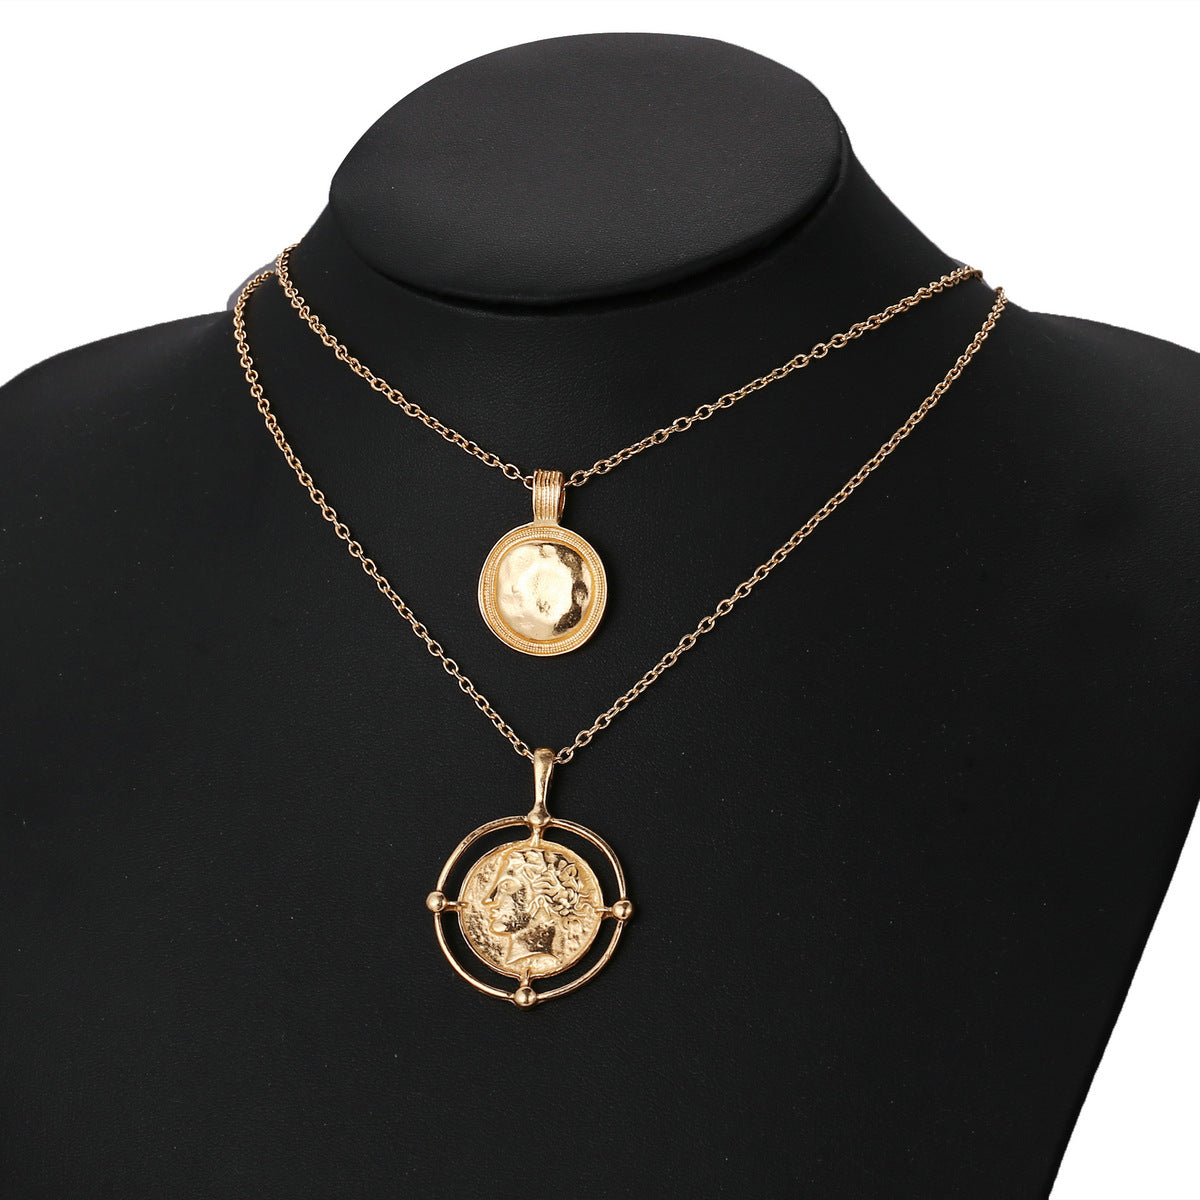 Arzonai European and American cross-border necklace creative retro gold alloy head seal disc necklace